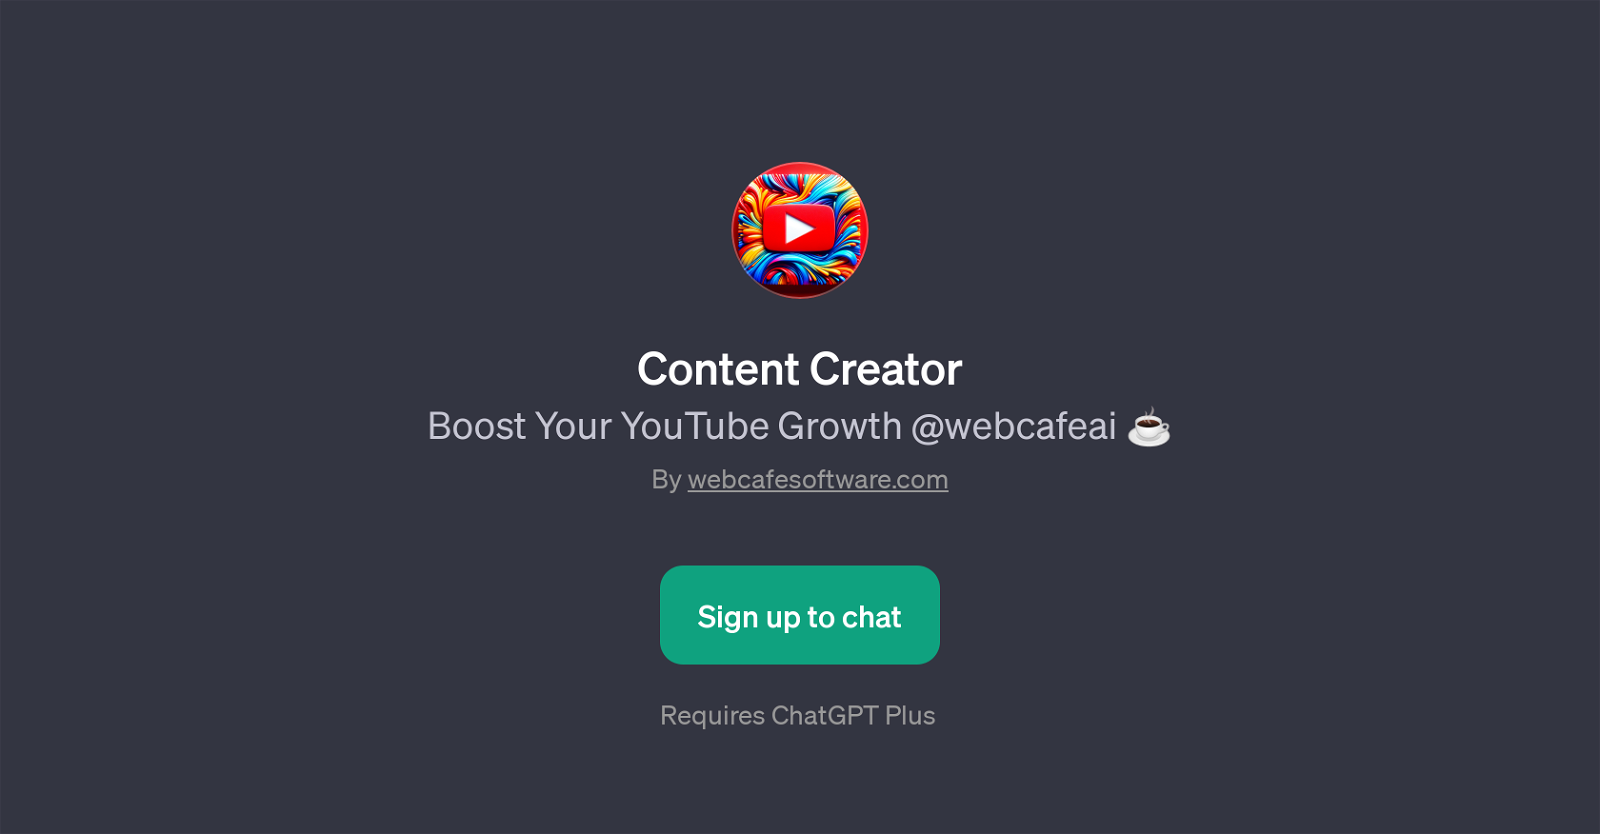 Content Creator website